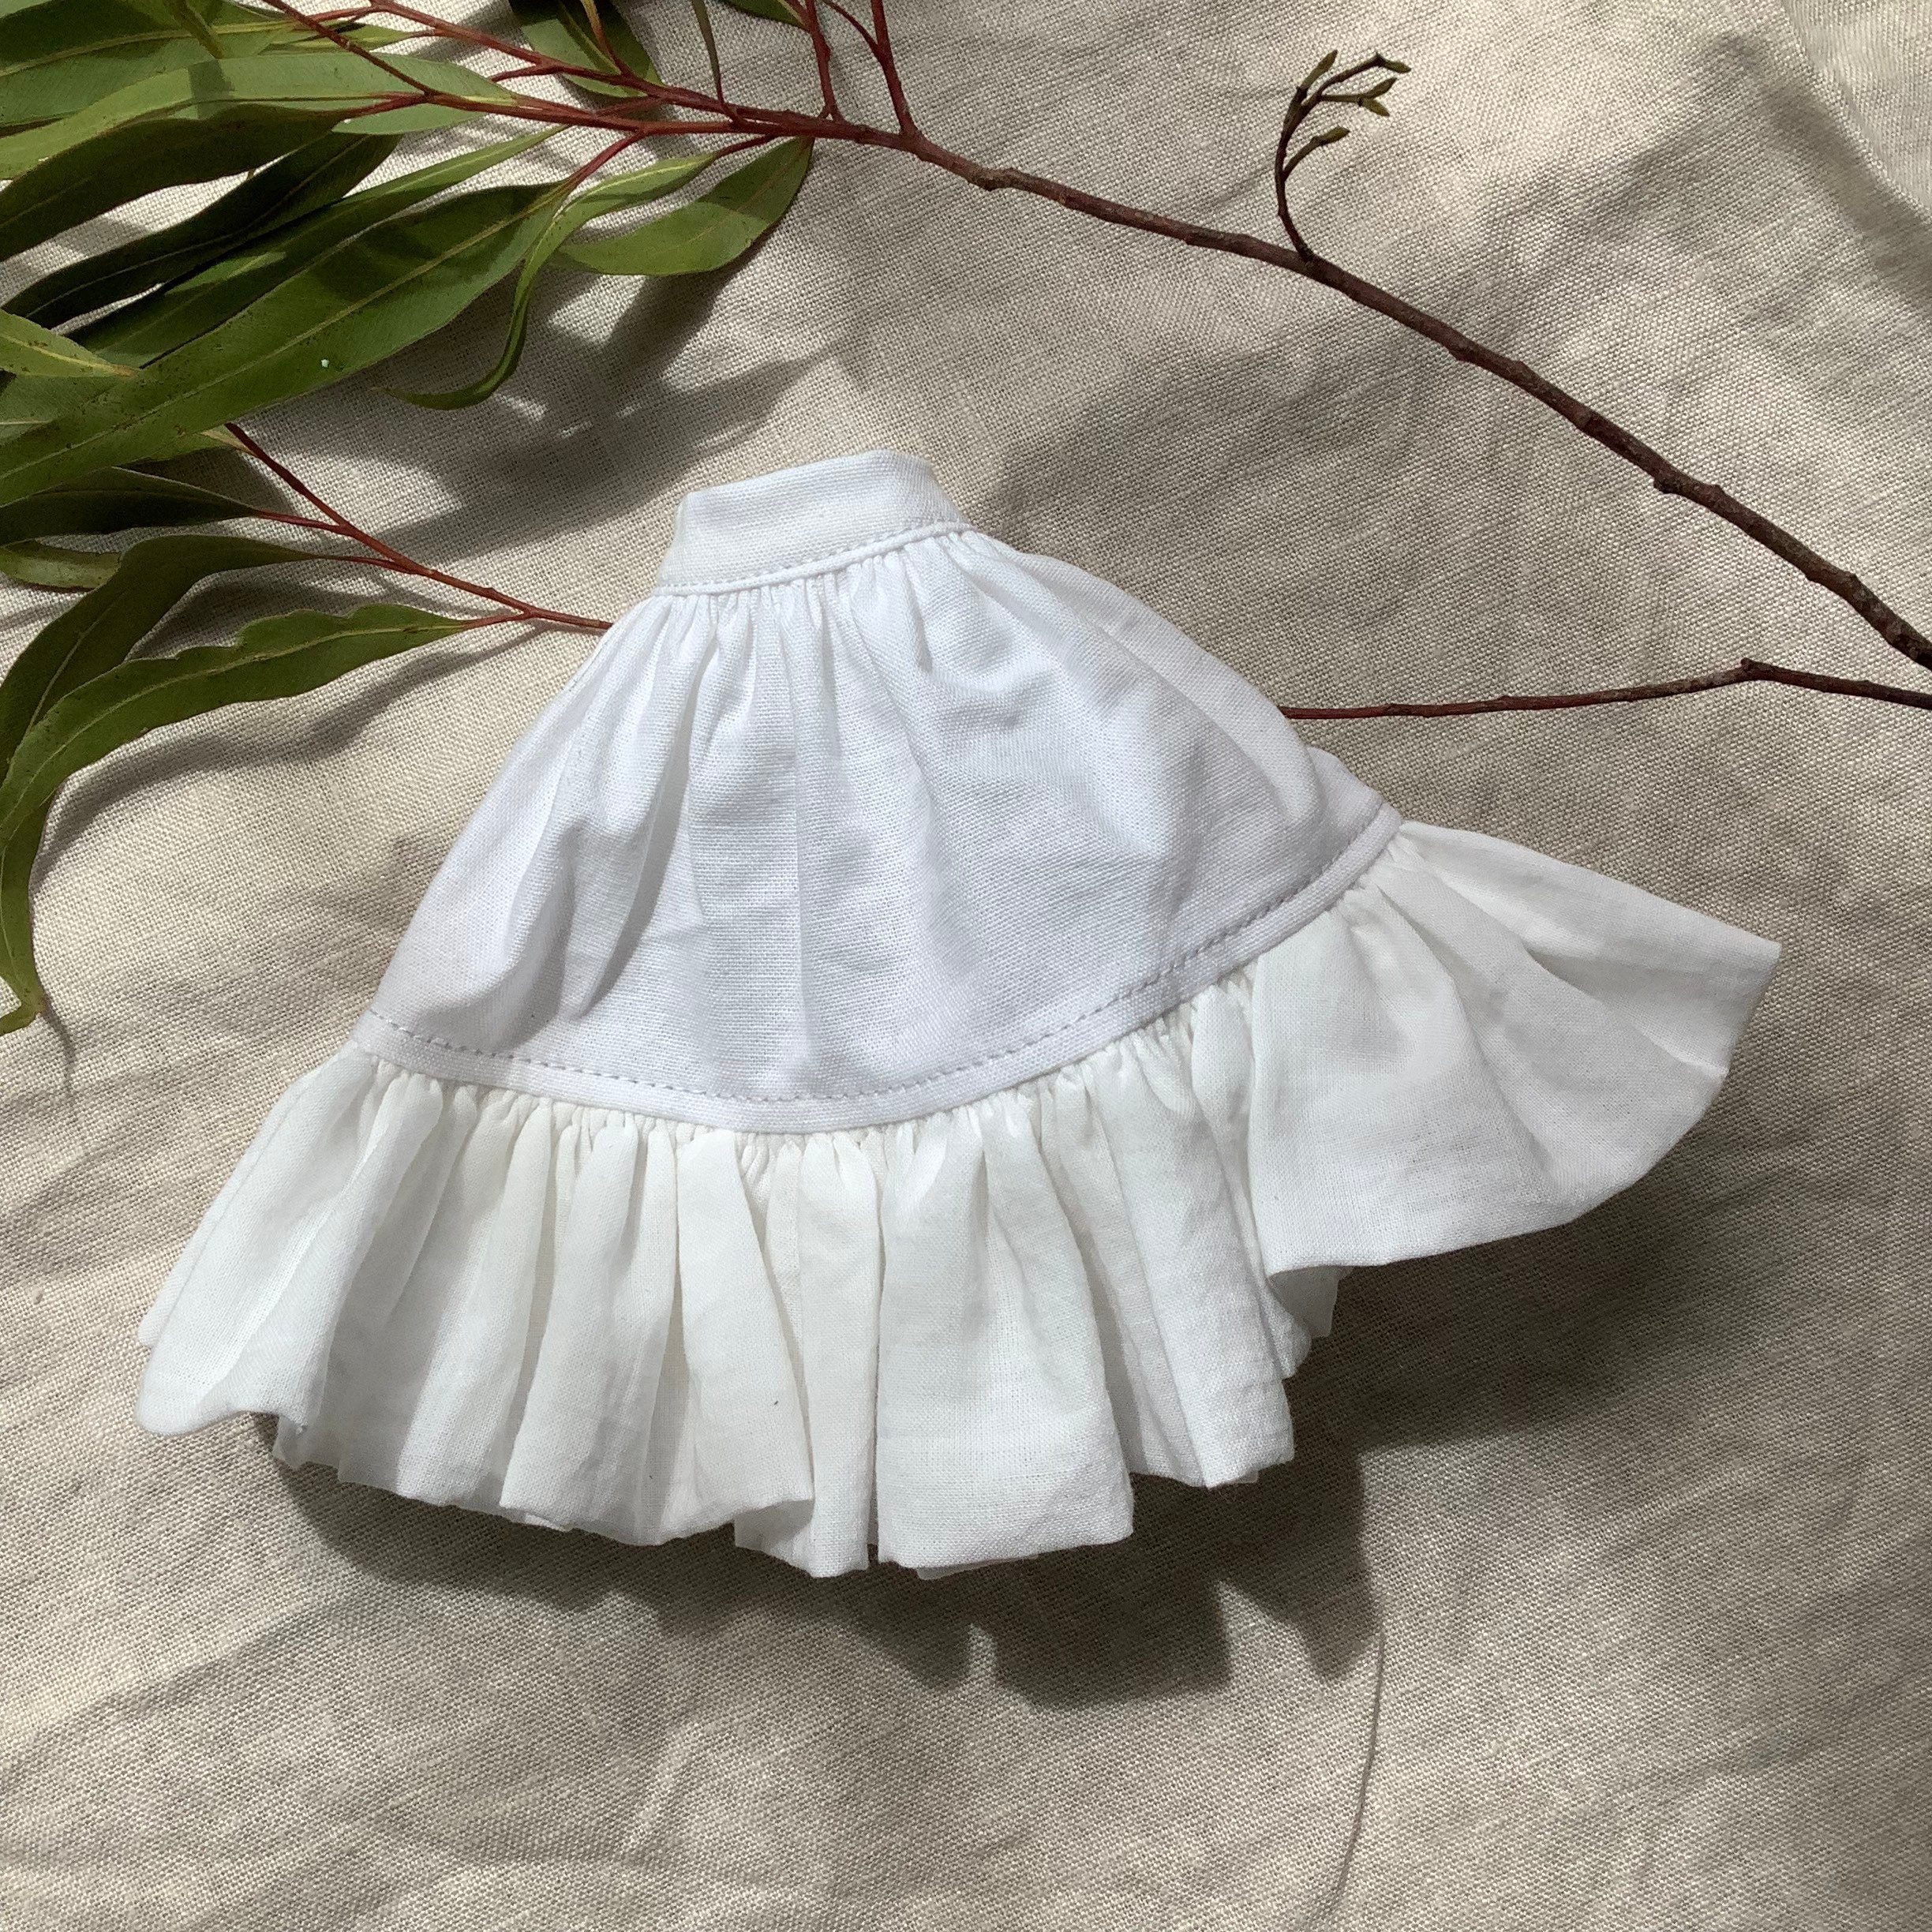 Petticoat skirt for sale  